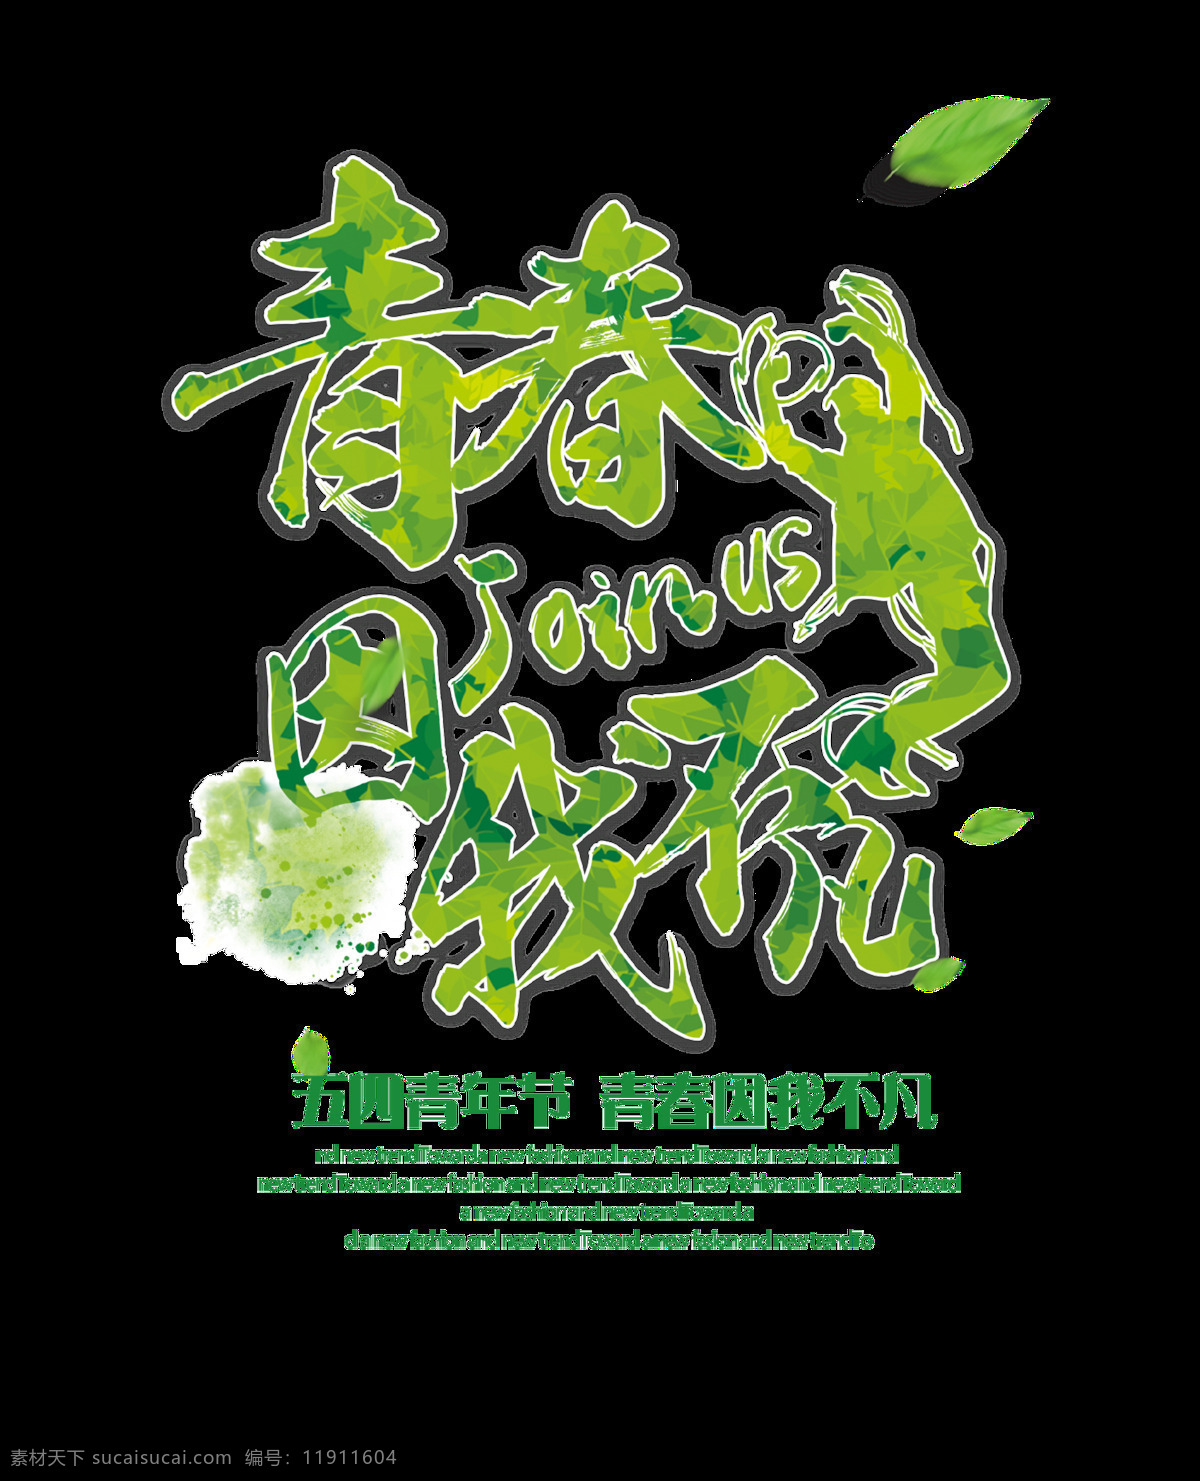 清新 青春 绿色 青年节 艺术 字体 艺术字体 五四青年节 绿色字体 树叶 绿色汉字 绿色英文 人像剪影